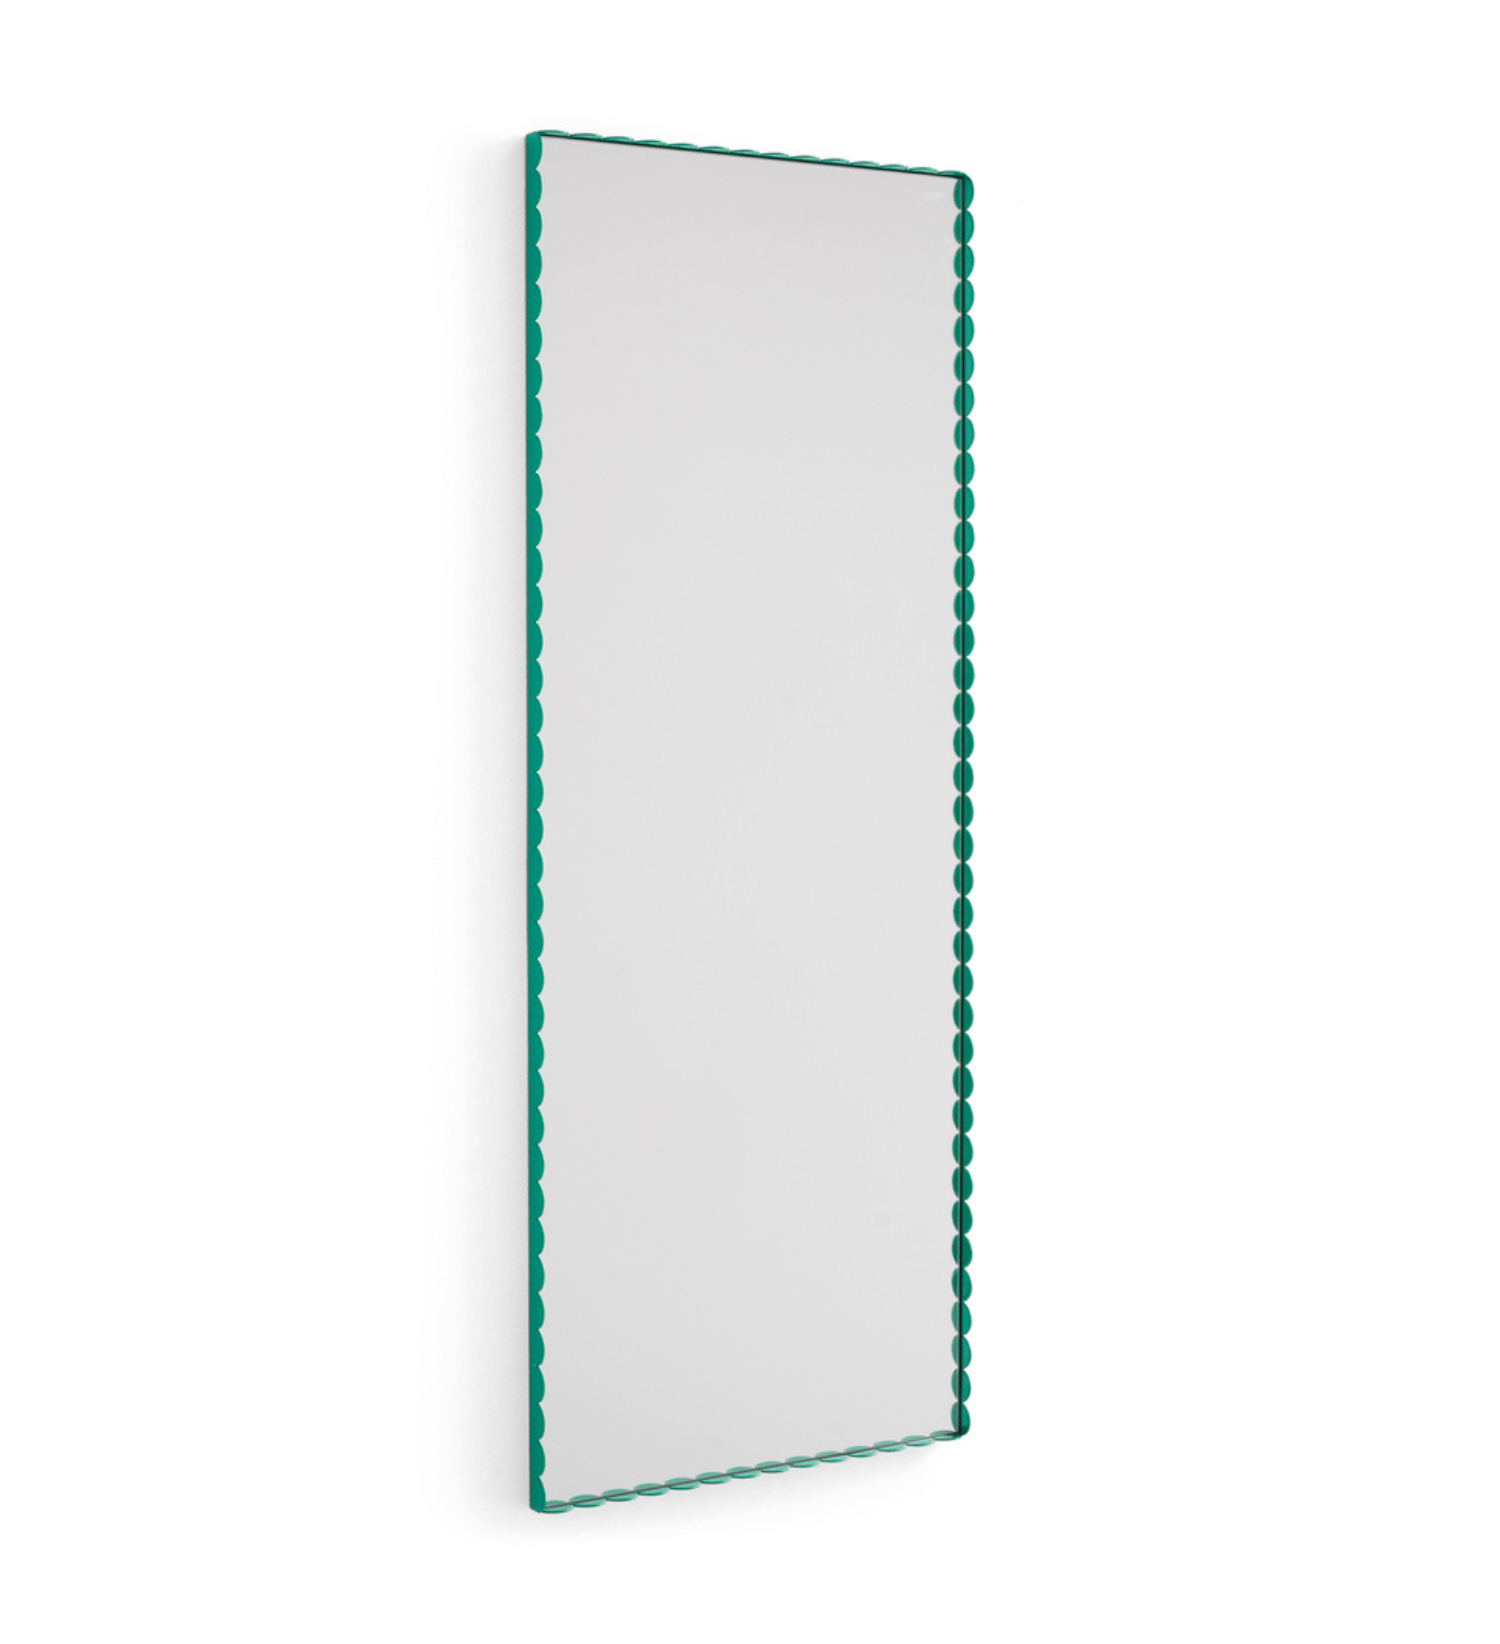 Prostokątne lustro Arcs Mirror ze szmaragdowa rama marki Hay